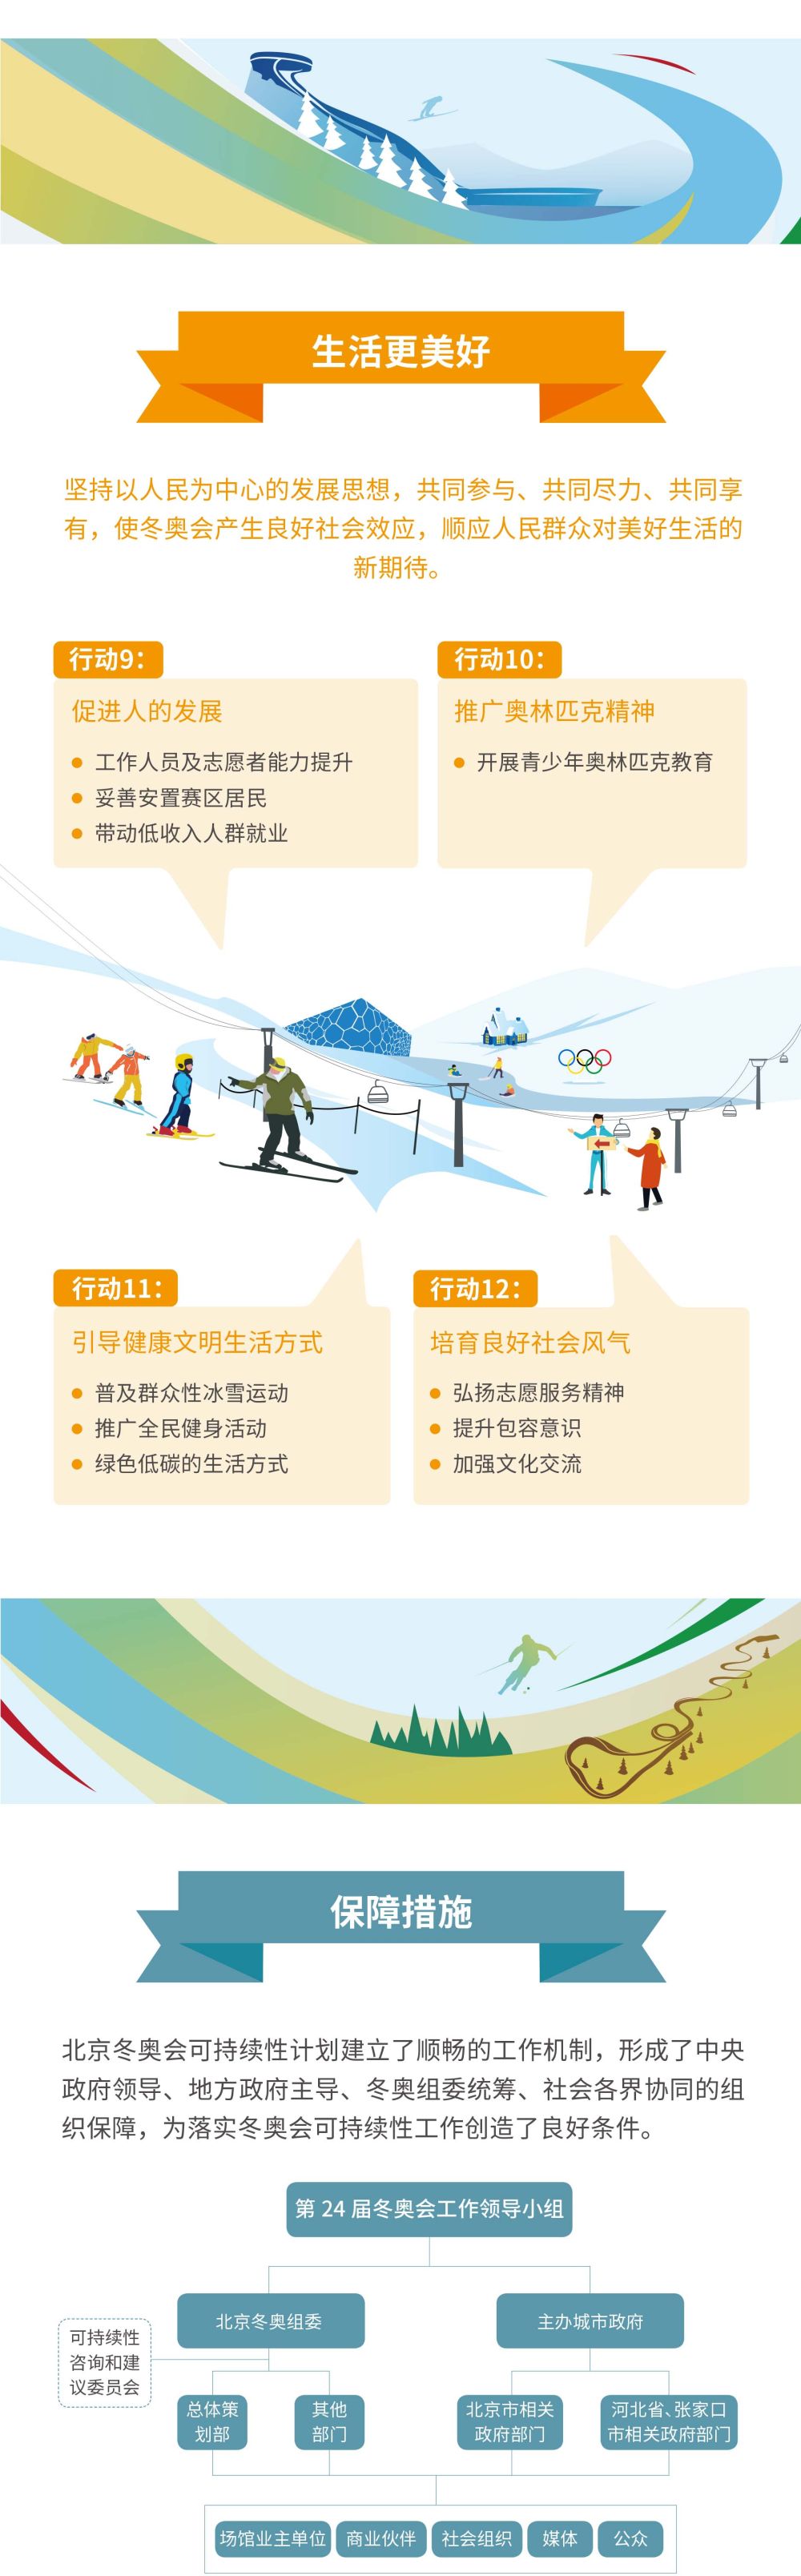 北京冬奥会路线图图片